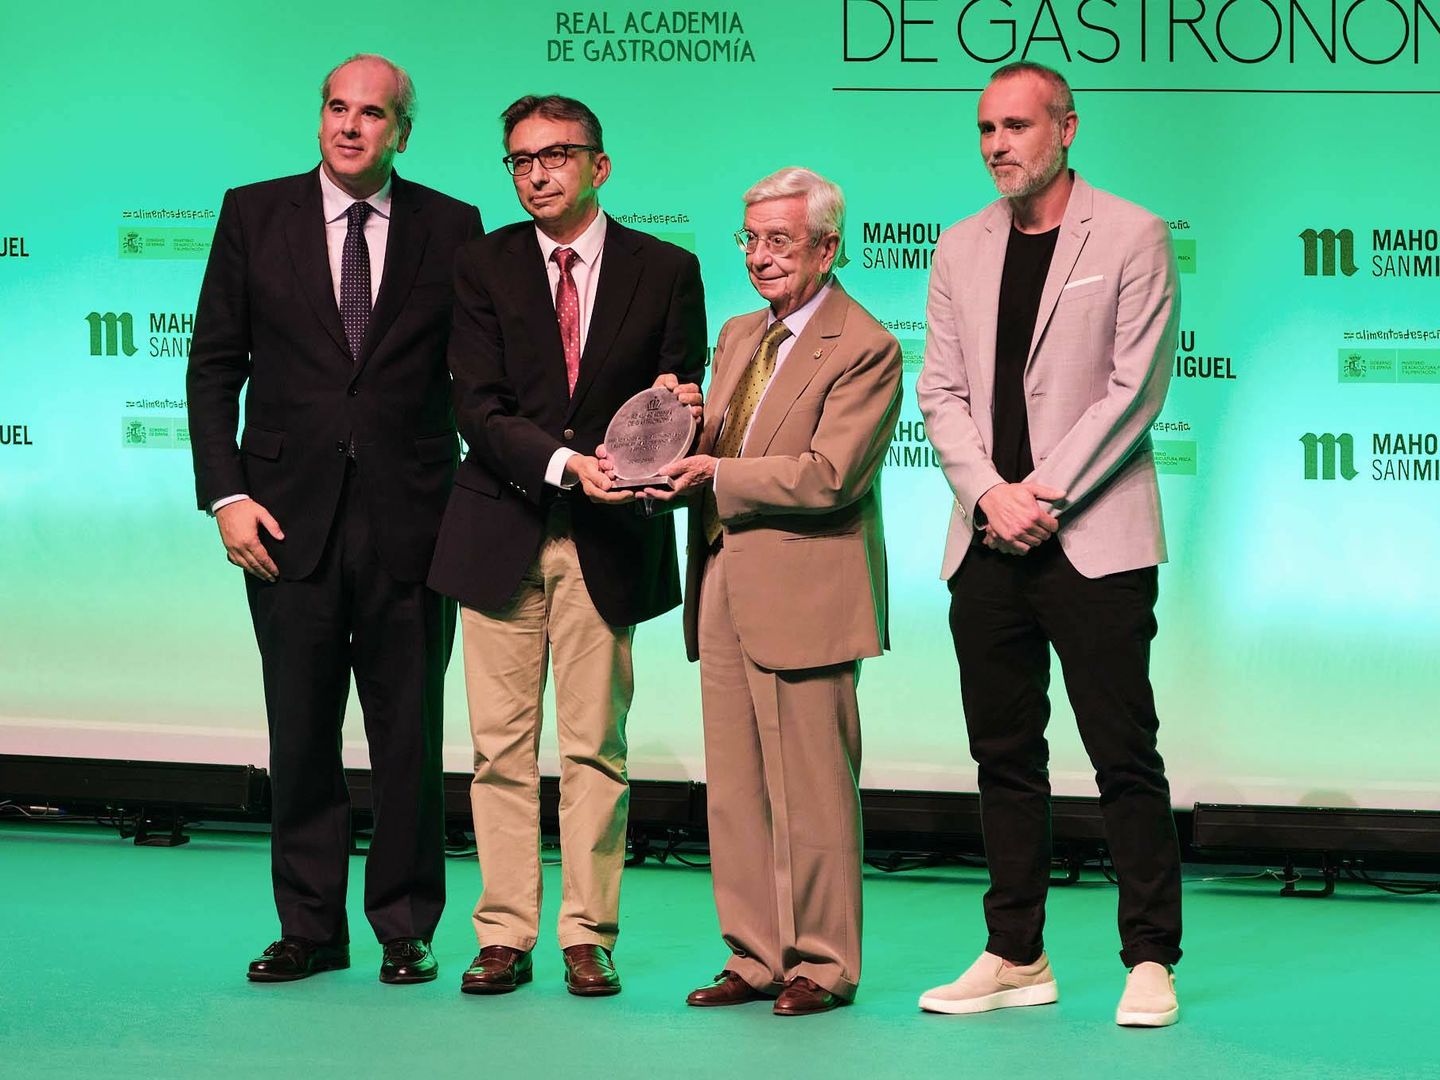 José López Miranda recogiendo el Premio de Investigación e Innovación Gastronómica por el estudio CORDIOPREV. Junto a él, Luis Suárez de Lezo, Rafael Ansón y el chef Rodrigo de la Calle. (RAG)